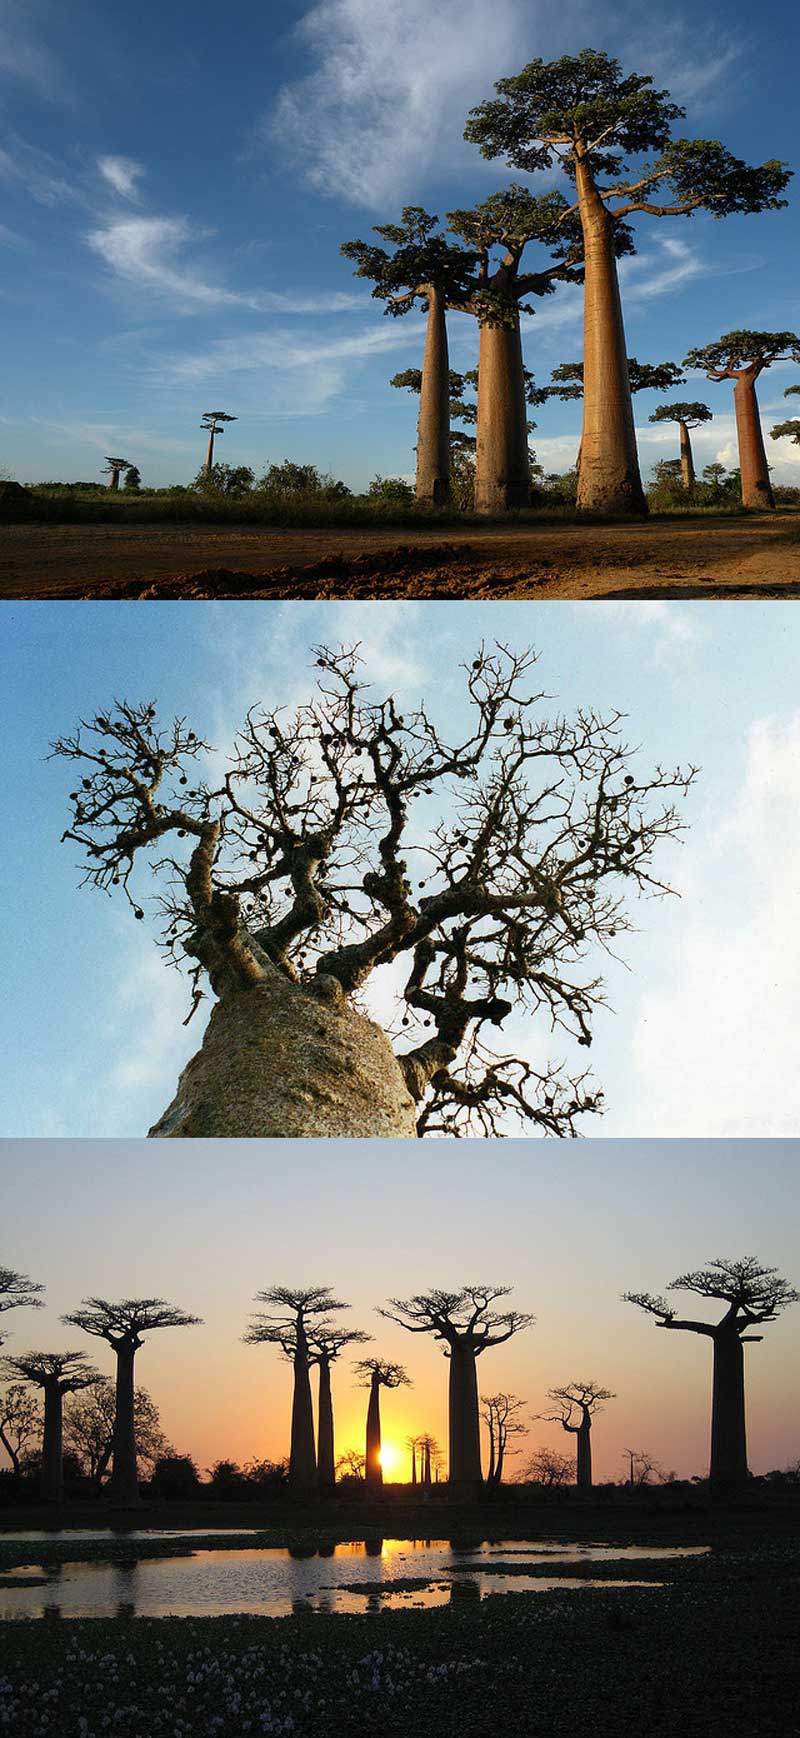 Fakta: Det finns sex arter av baobabträd på Madagaskar